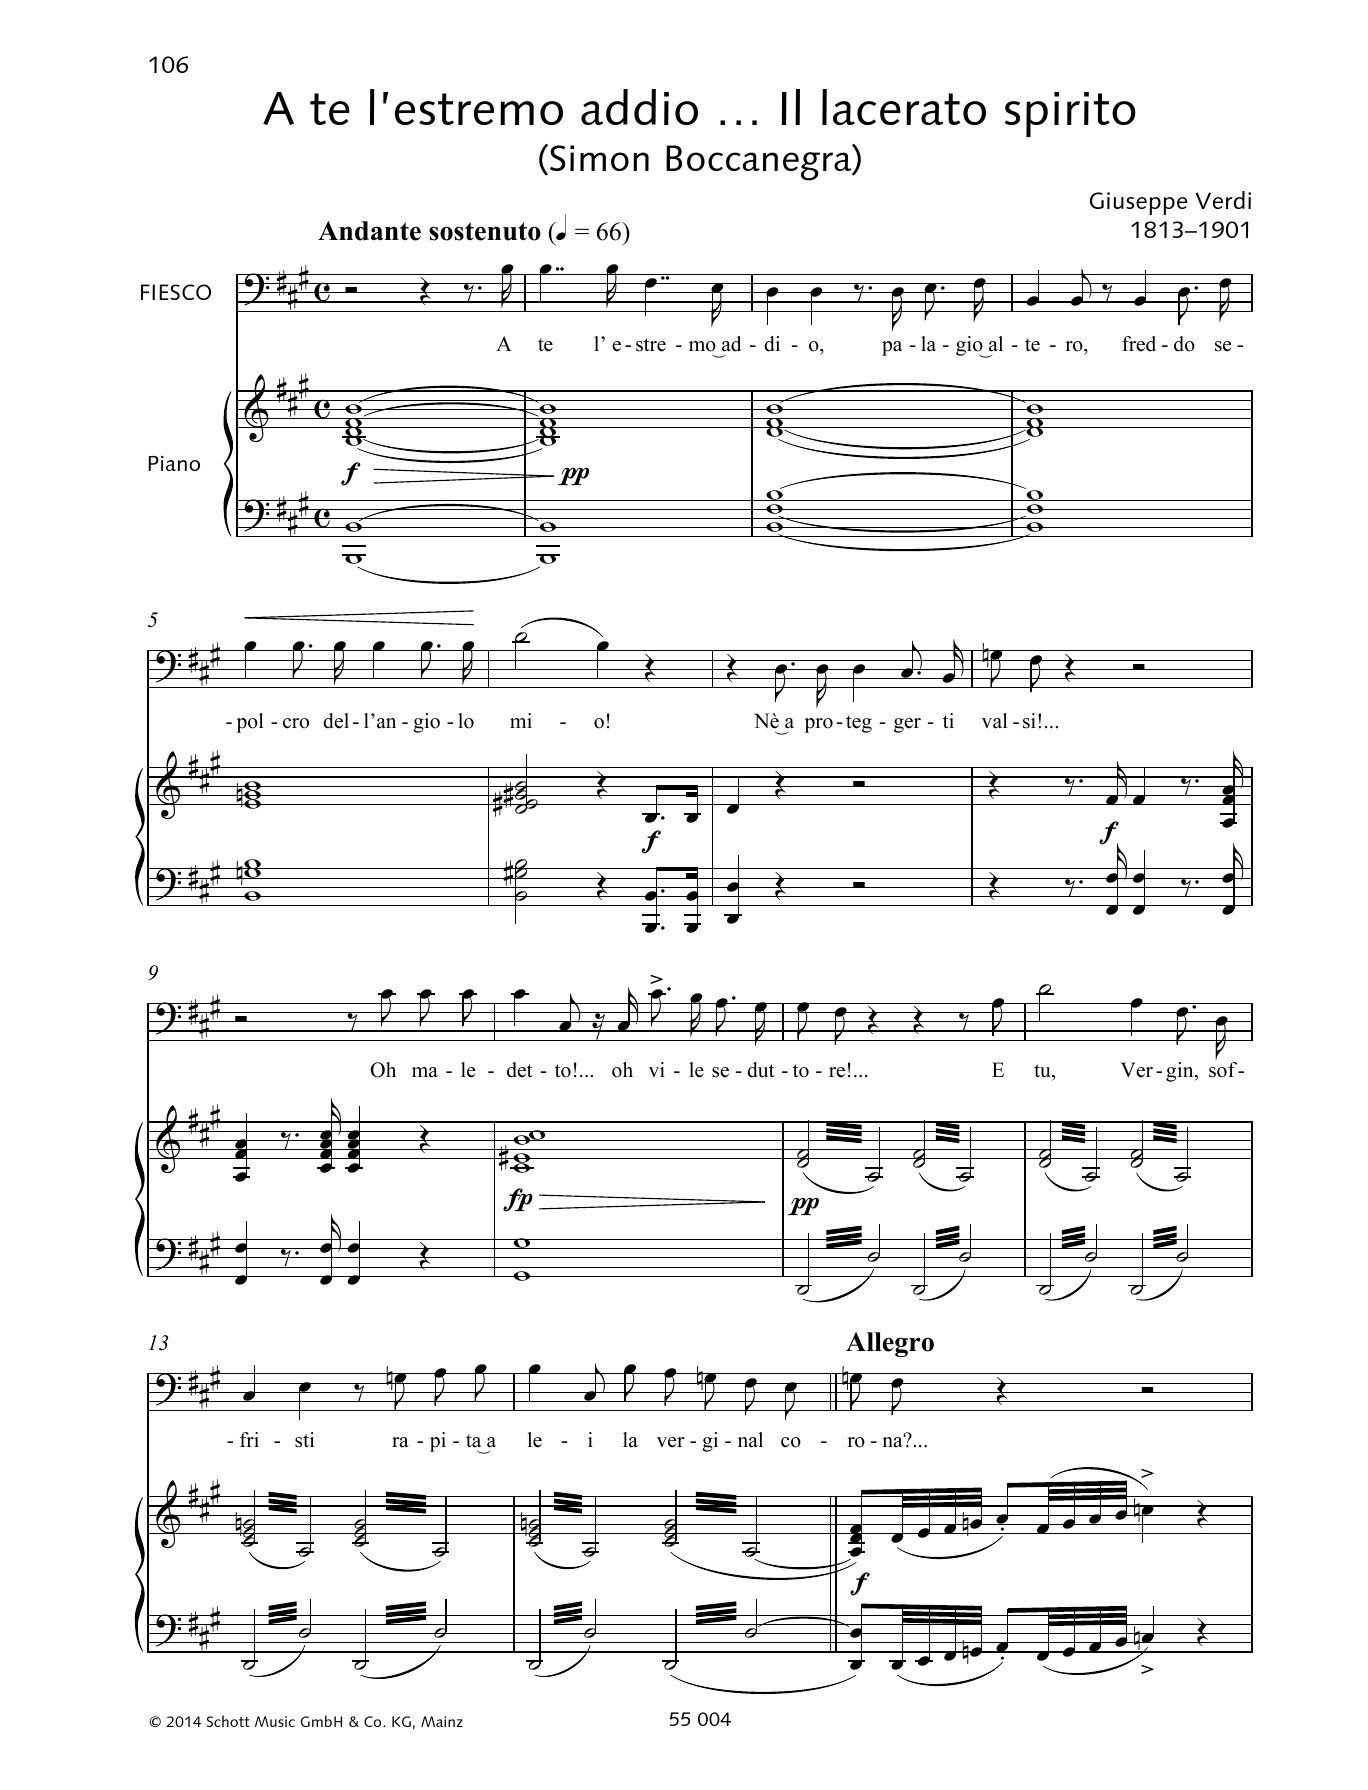 Giuseppe Verdi A te l'estremo addio... Il lacerato spirito Sheet Music Notes & Chords for Piano & Vocal - Download or Print PDF